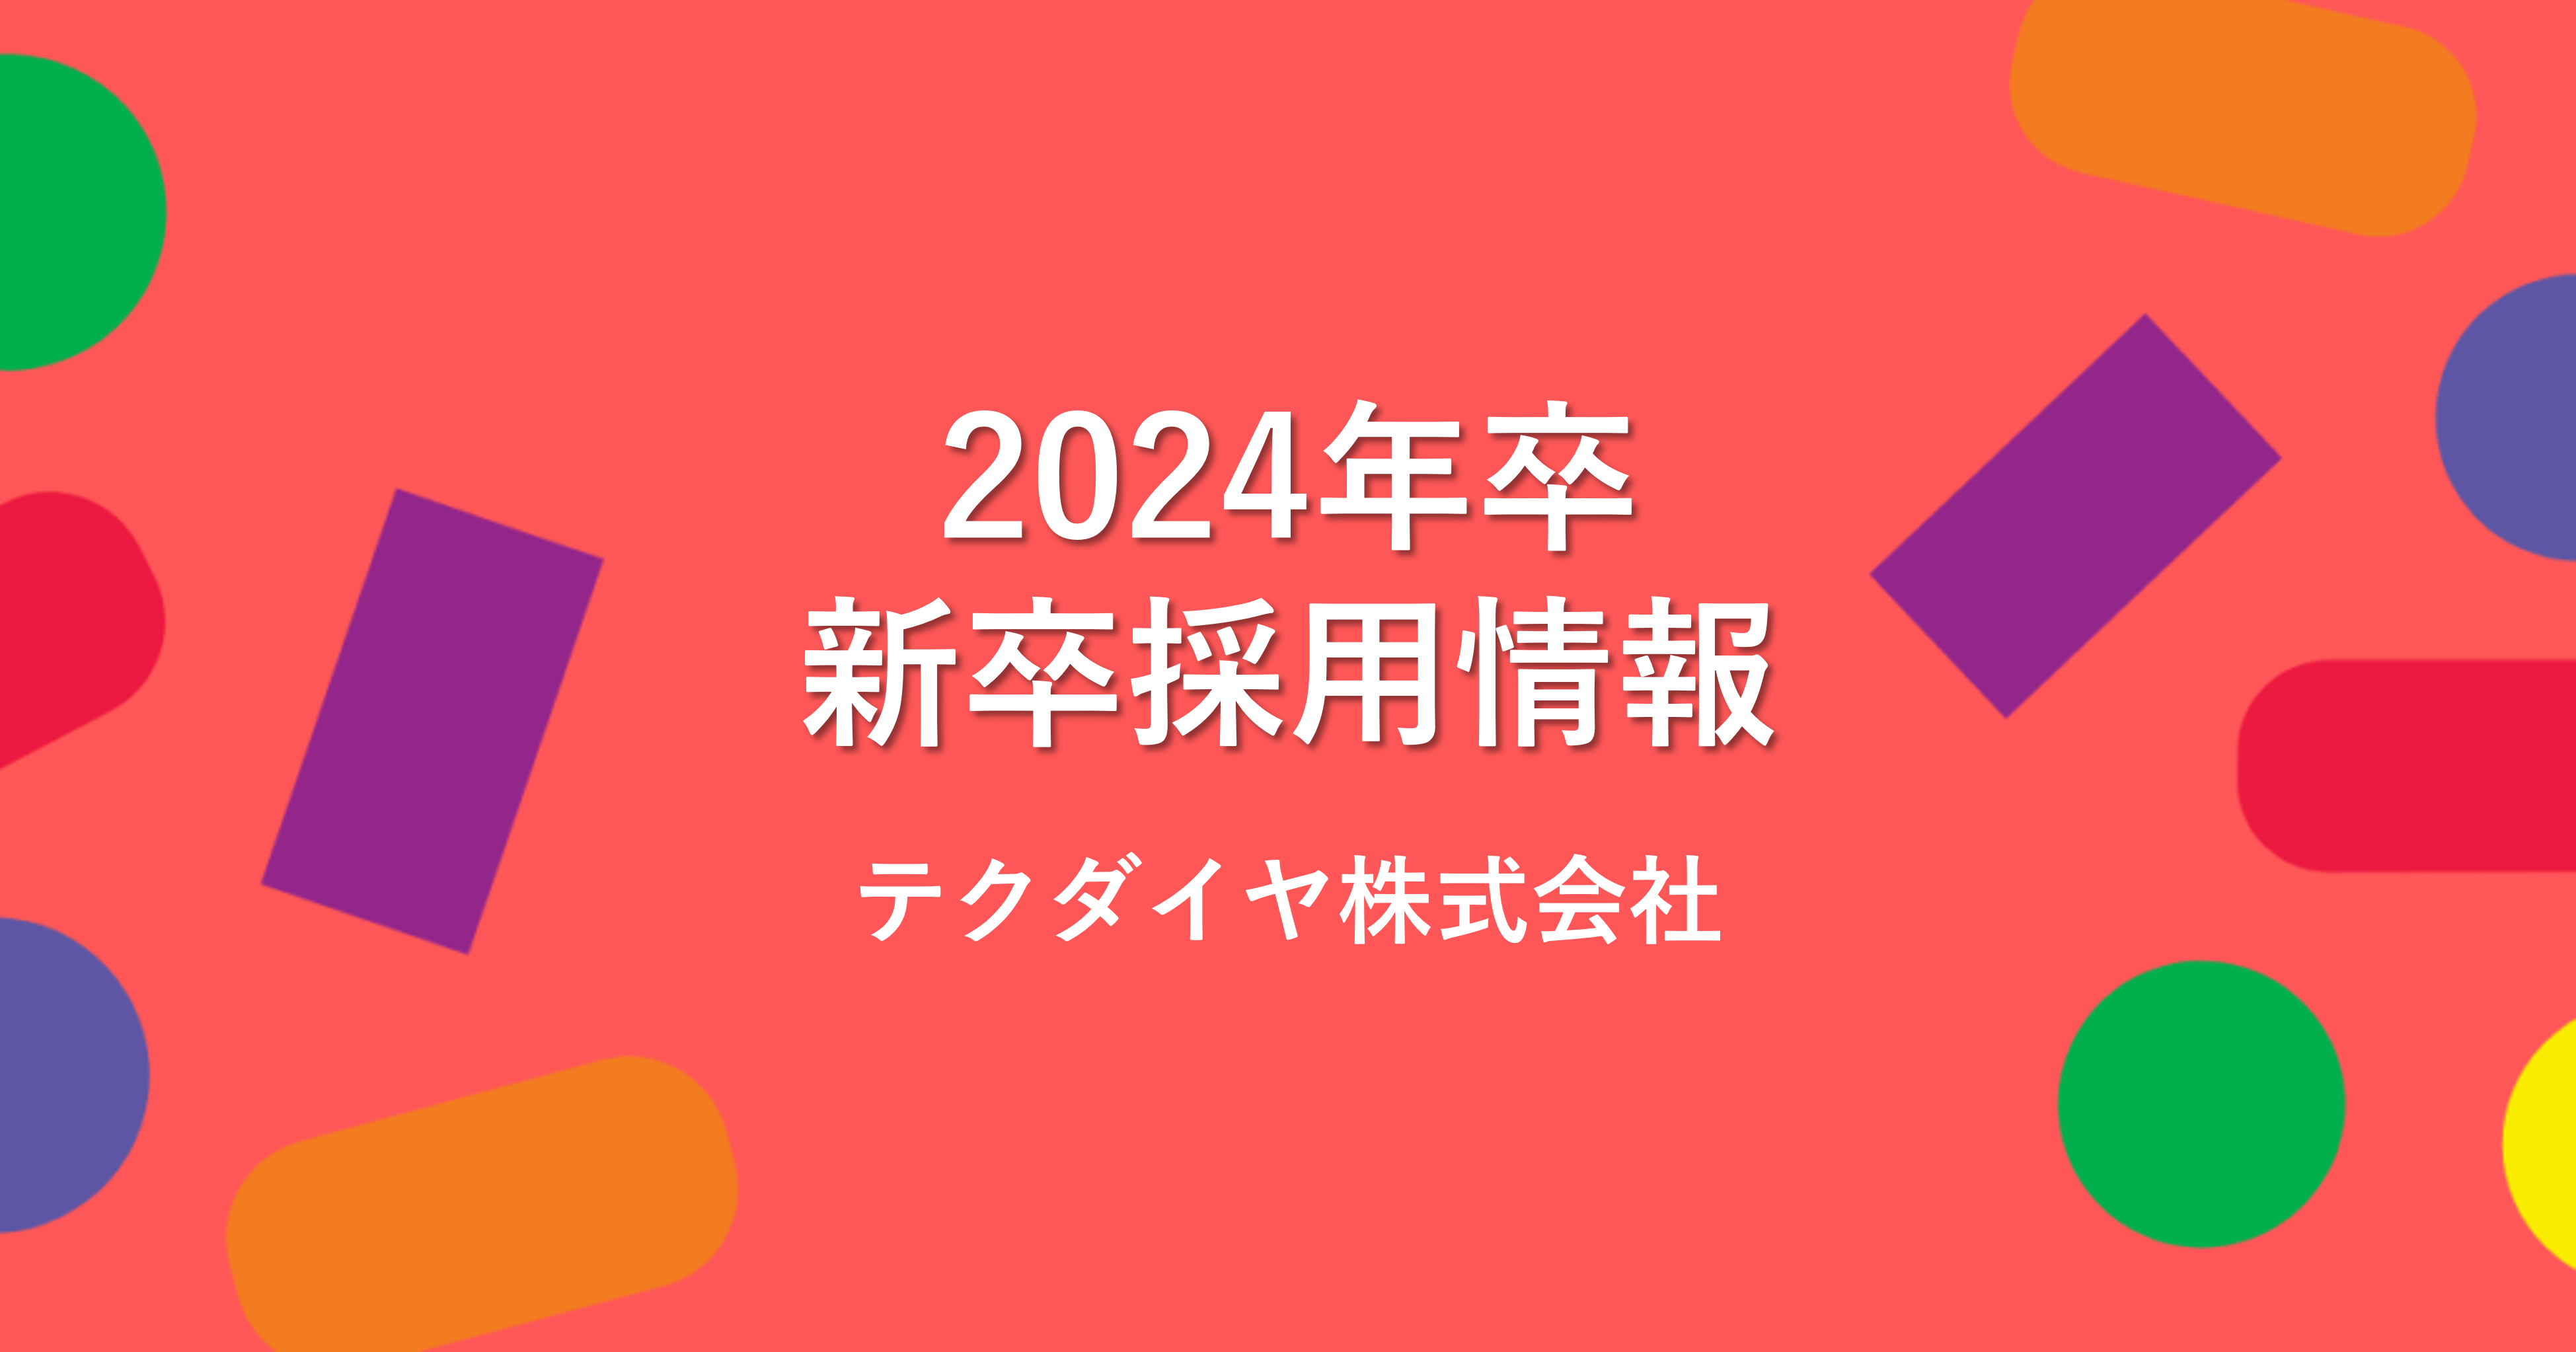 【最新版】テクダイヤ株式会社24卒新卒採用について